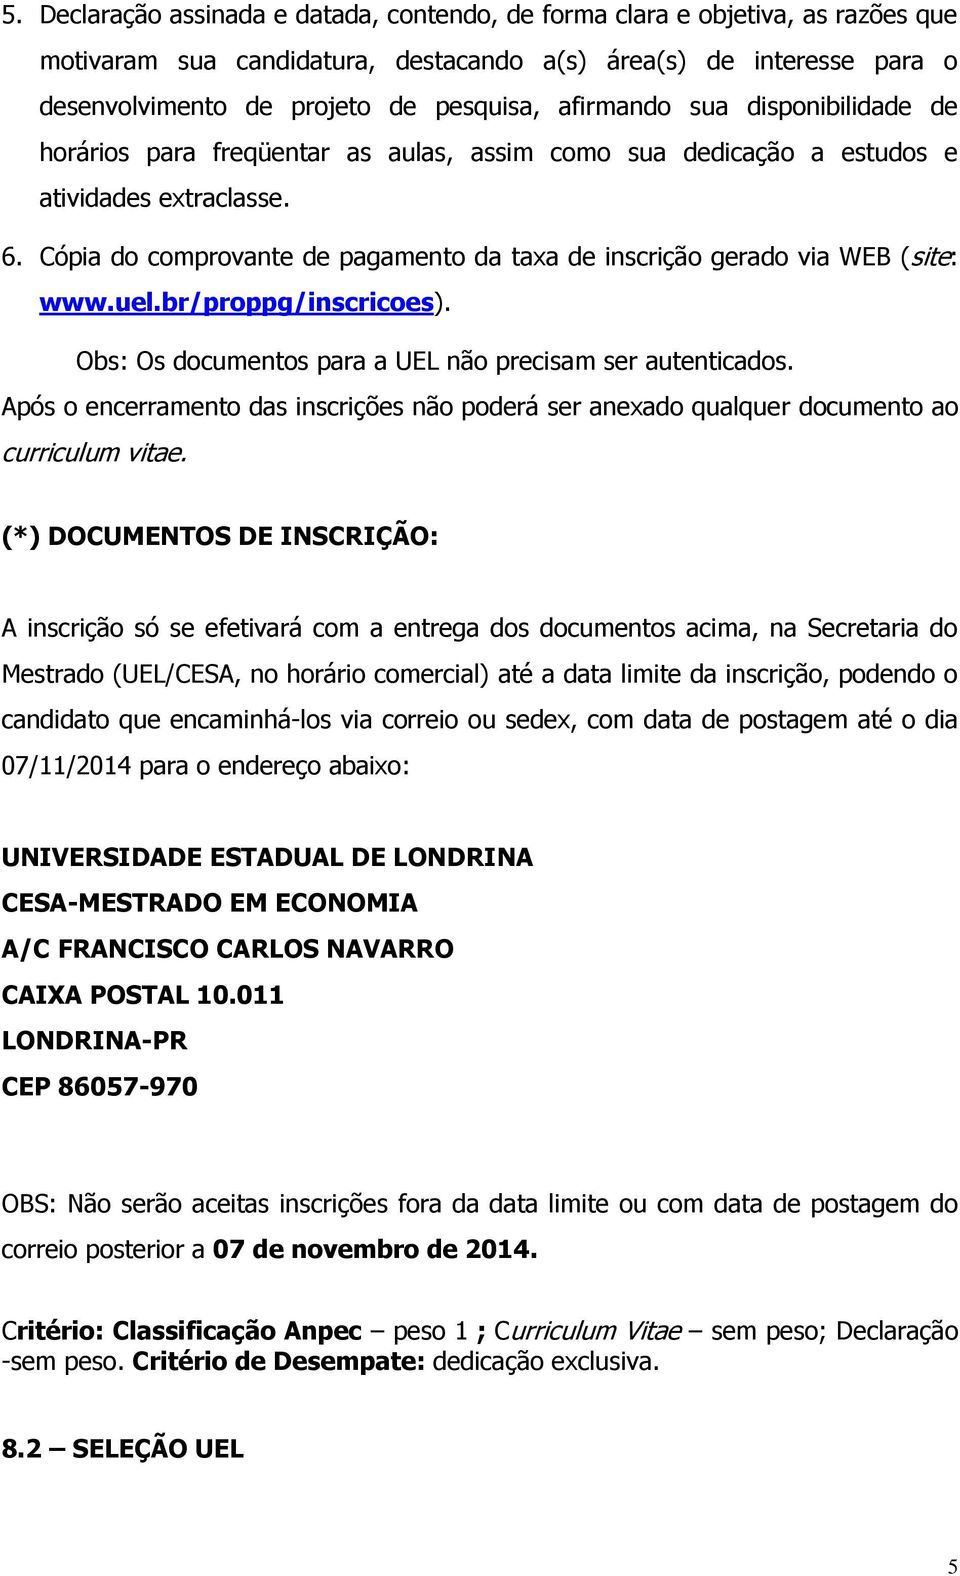 Cópia do comprovante de pagamento da taxa de inscrição gerado via WEB (site: www.uel.br/proppg/inscricoes). Obs: Os documentos para a UEL não precisam ser autenticados.